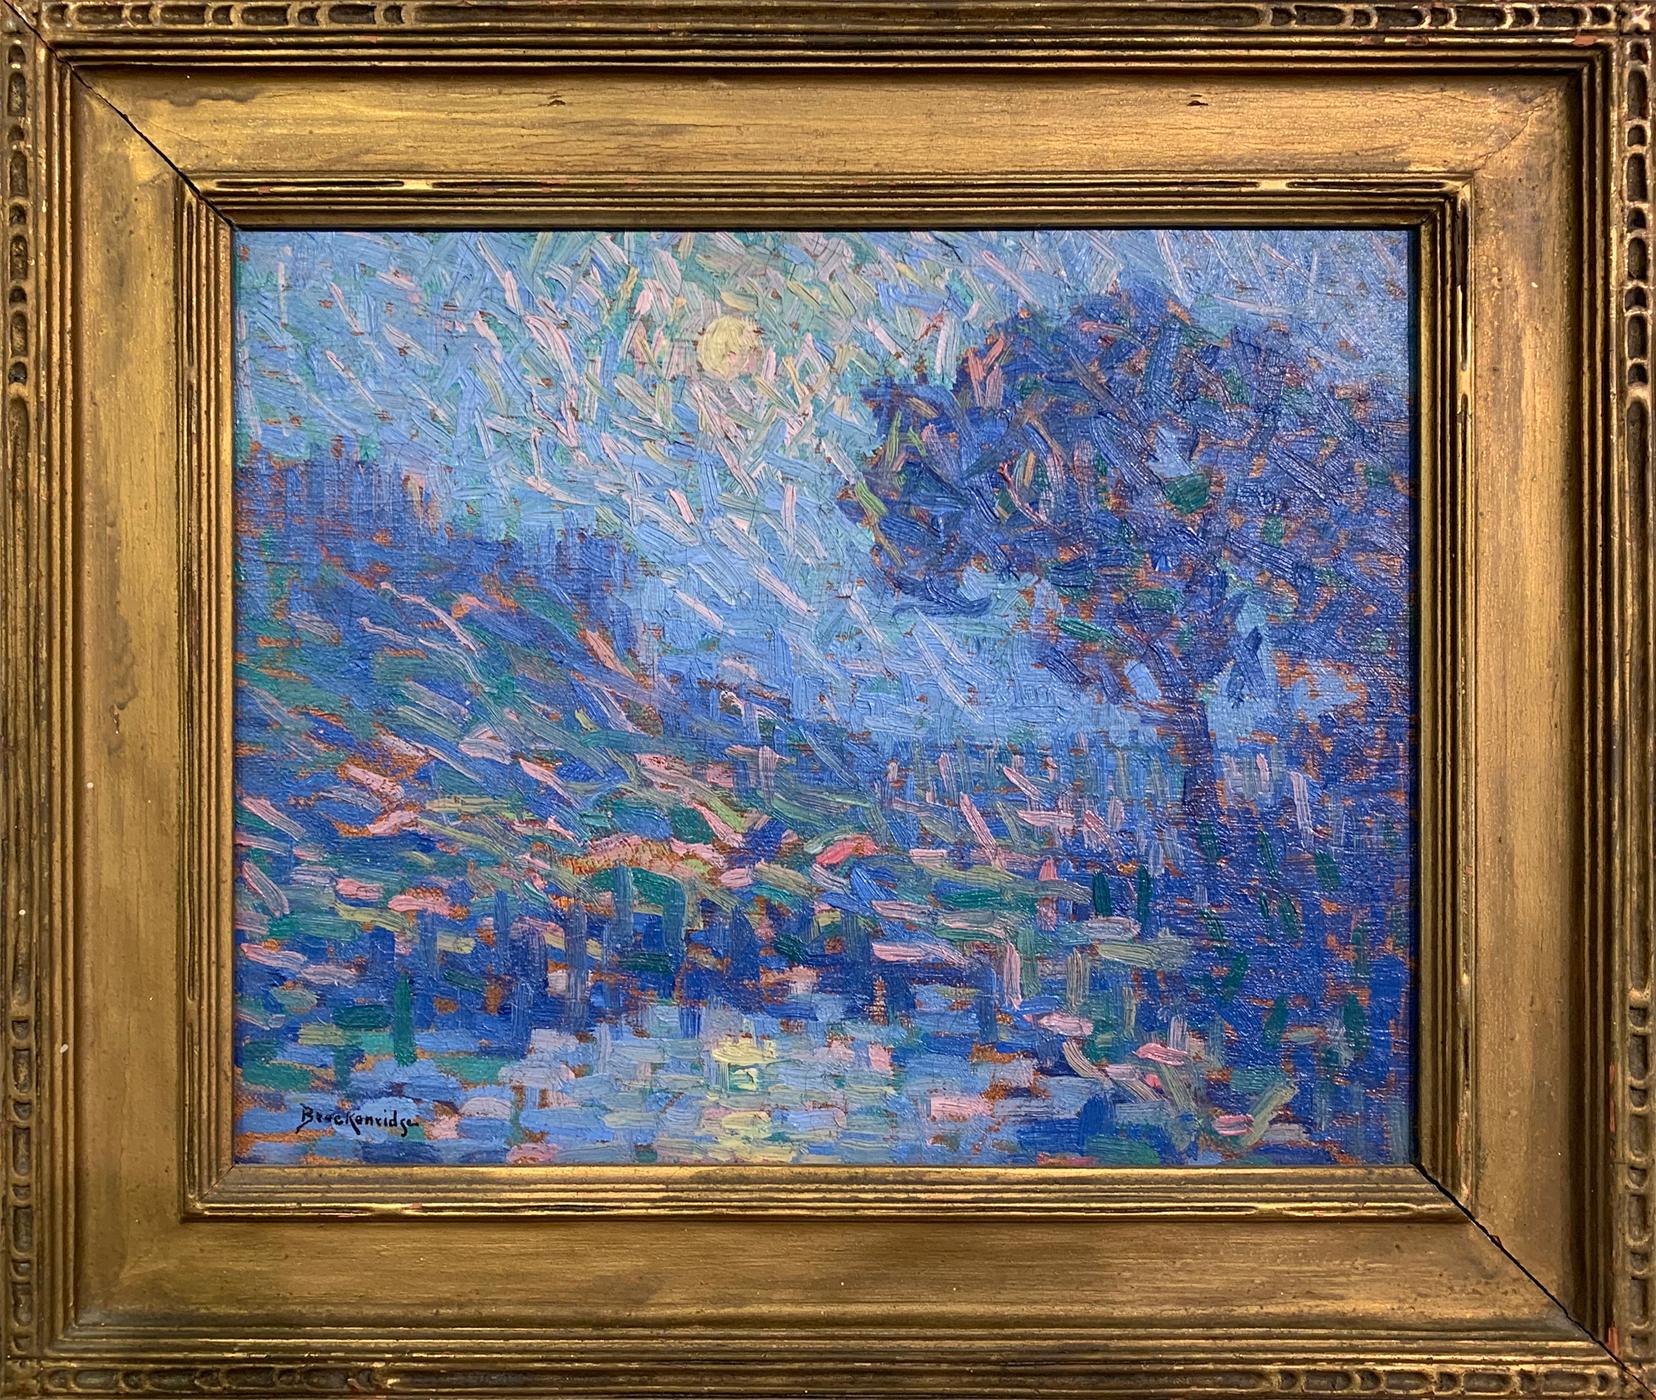 Hugh Breckenridge Landscape Painting - Blue Landscape, American Impressionist, Oil on Board, Signed and Framed